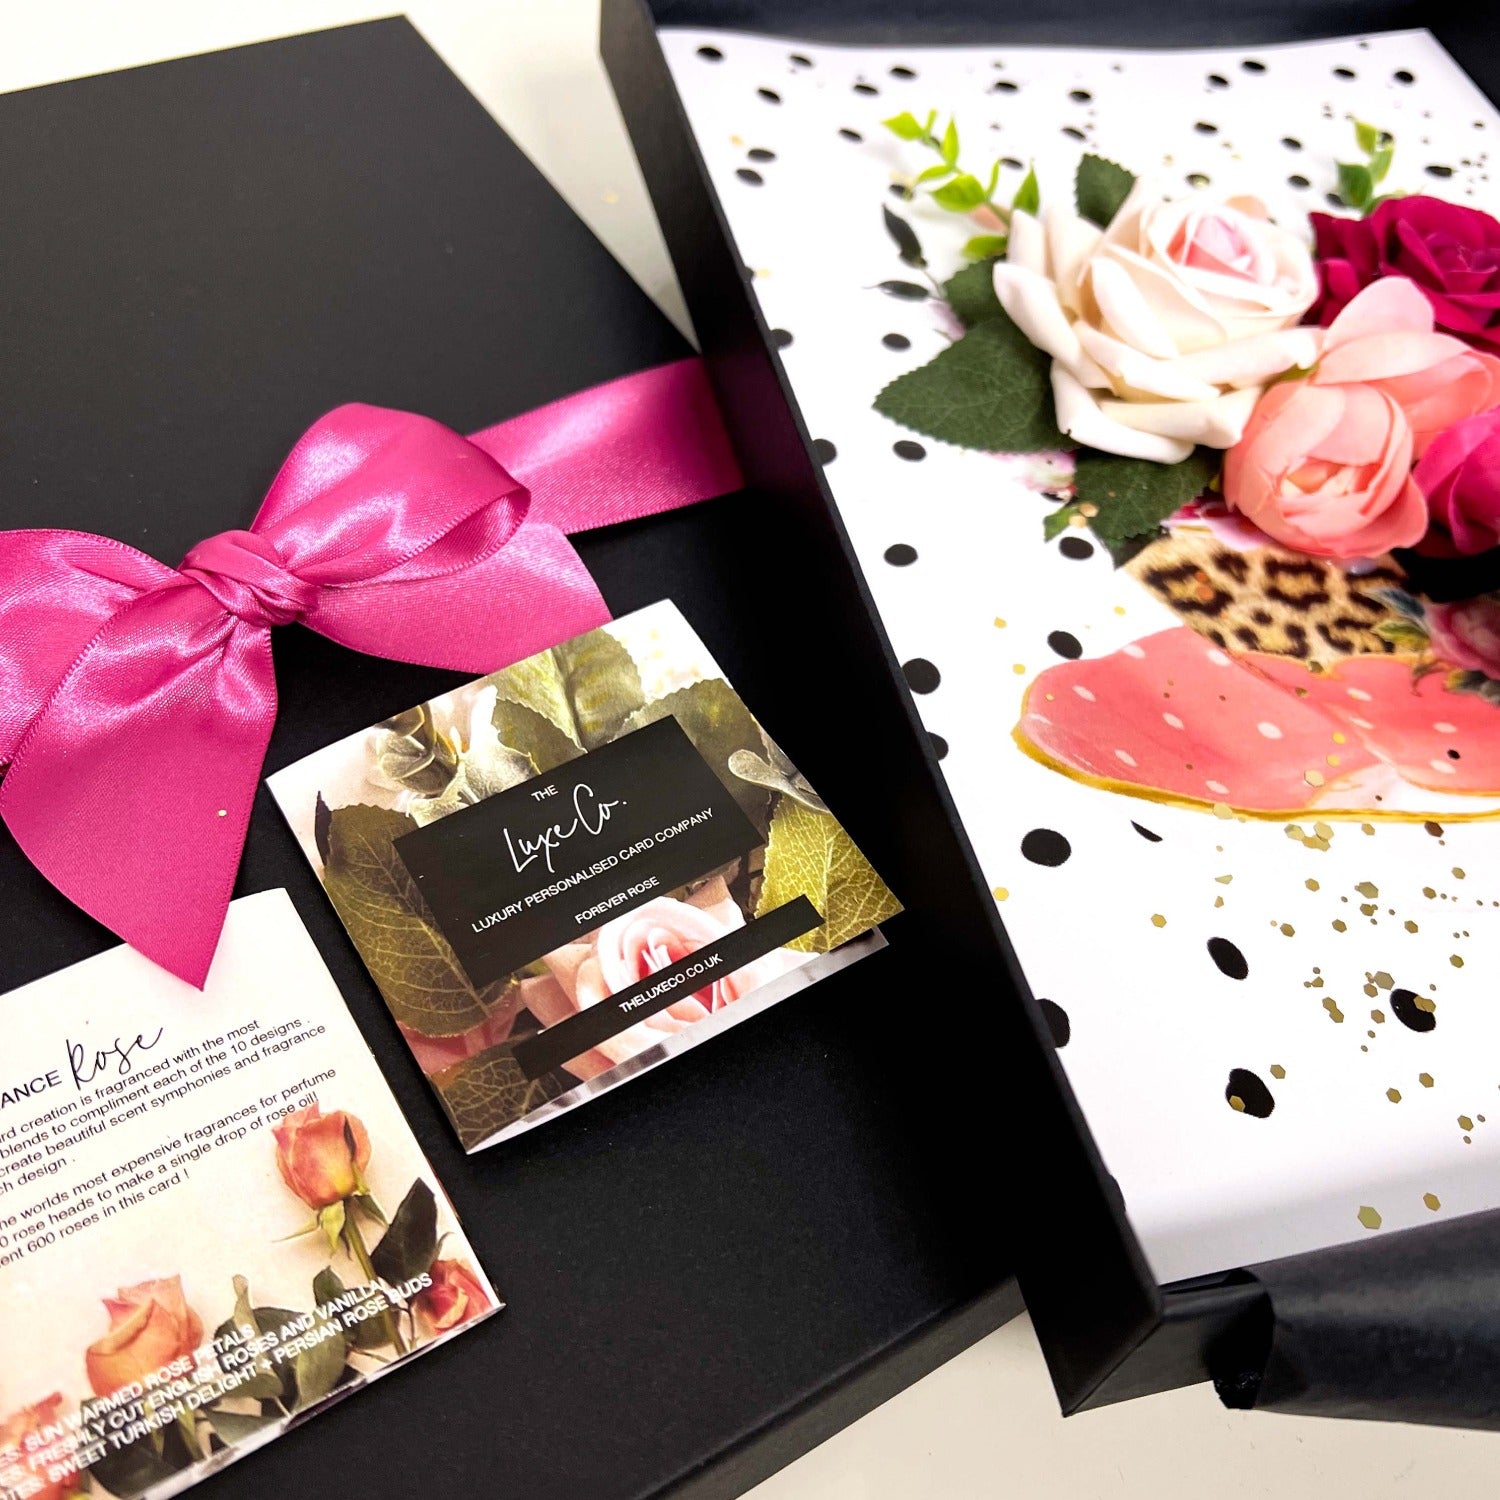 Ladies Teacup and Roses Handmade luxury greetings card design